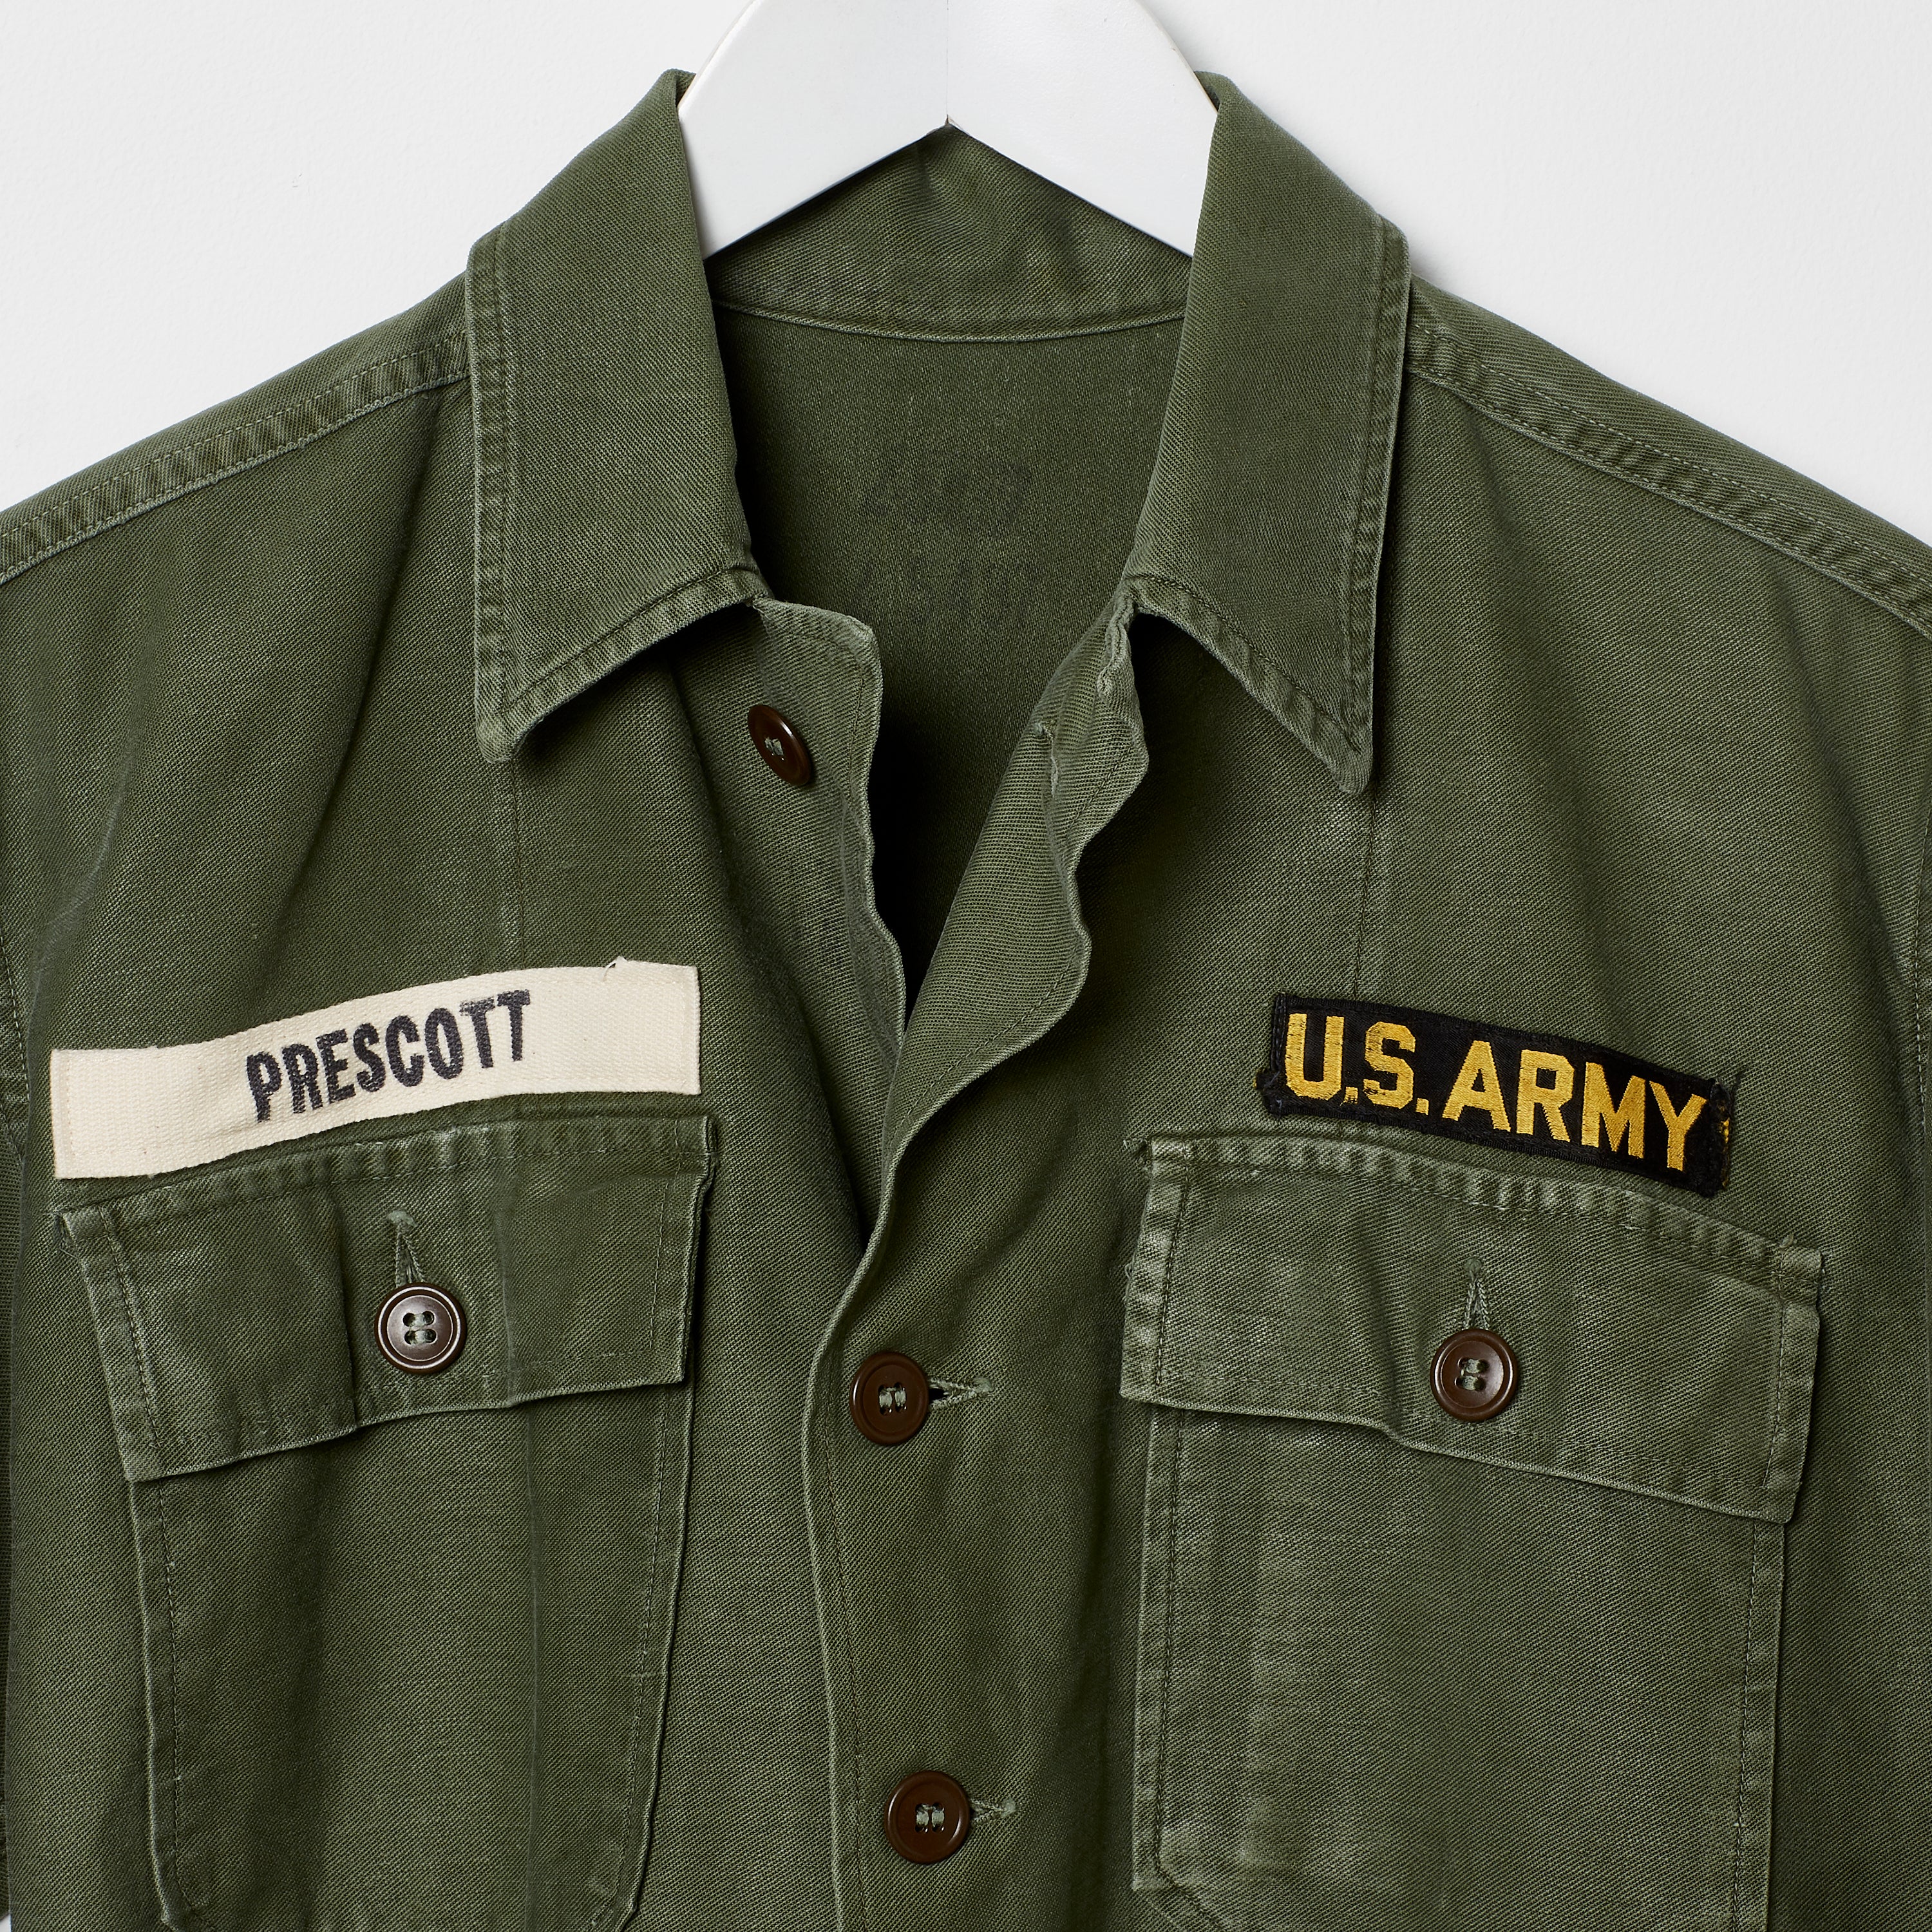 Vintage OG-107 Fatigue Shirt S/S, Type 2 - Eastern Hill General